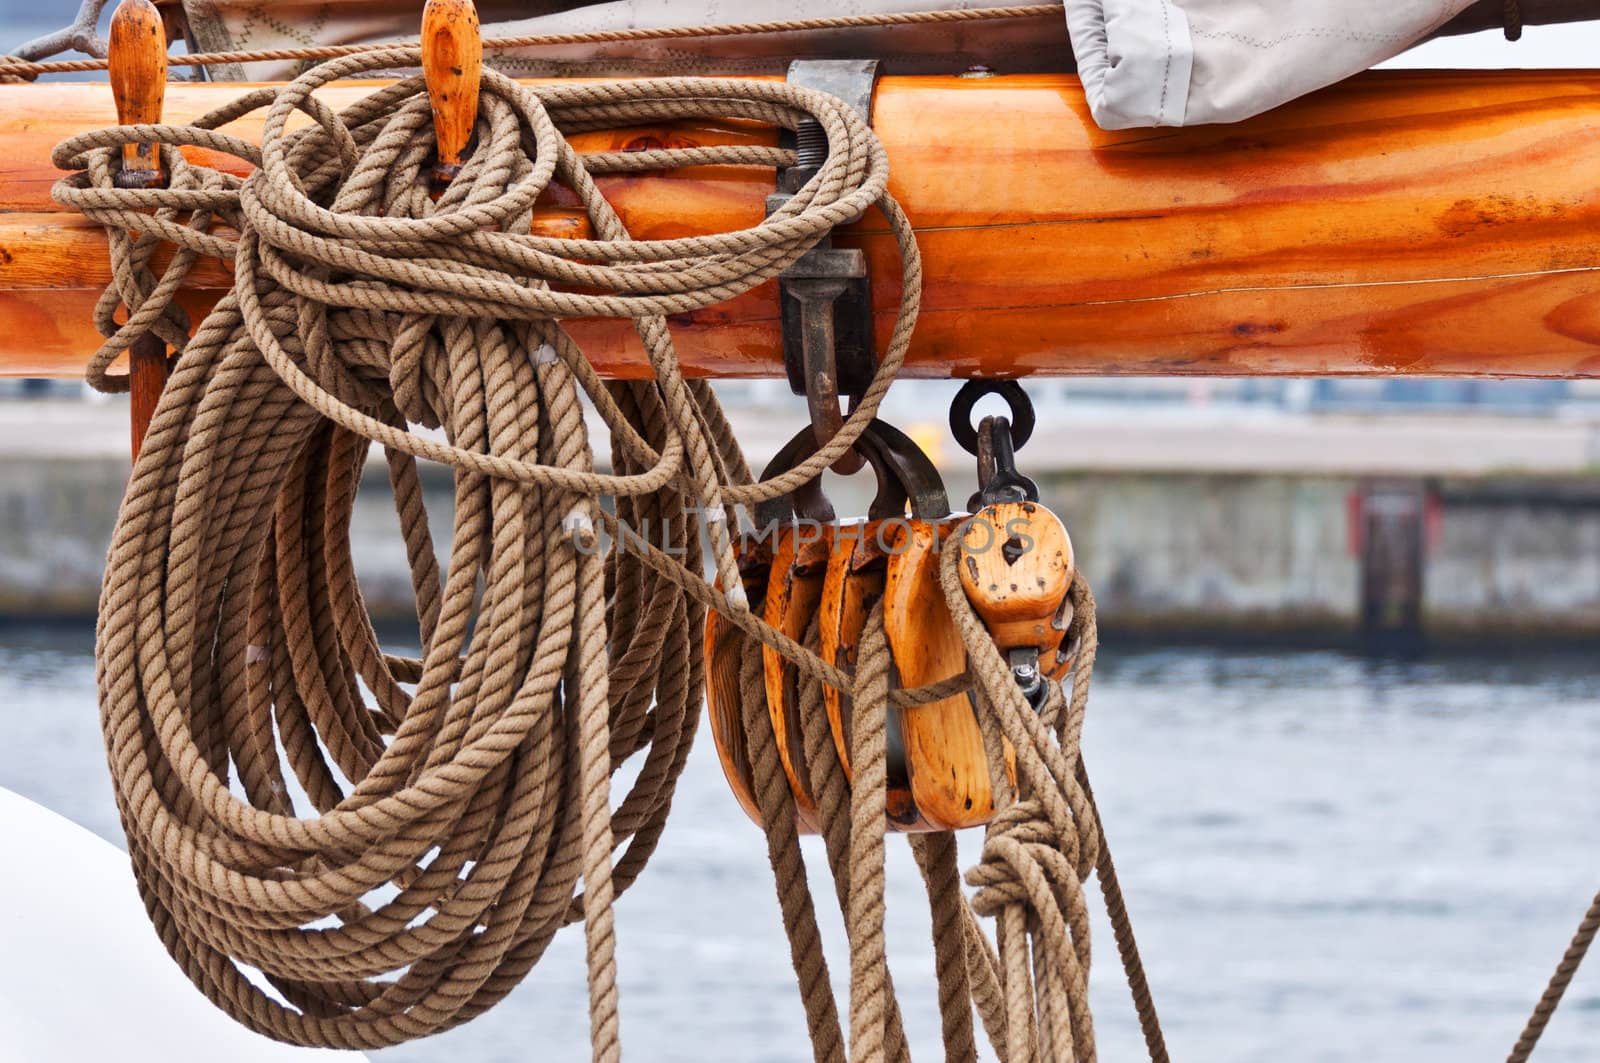 Ropes on  tallship mast close-up by Nanisimova